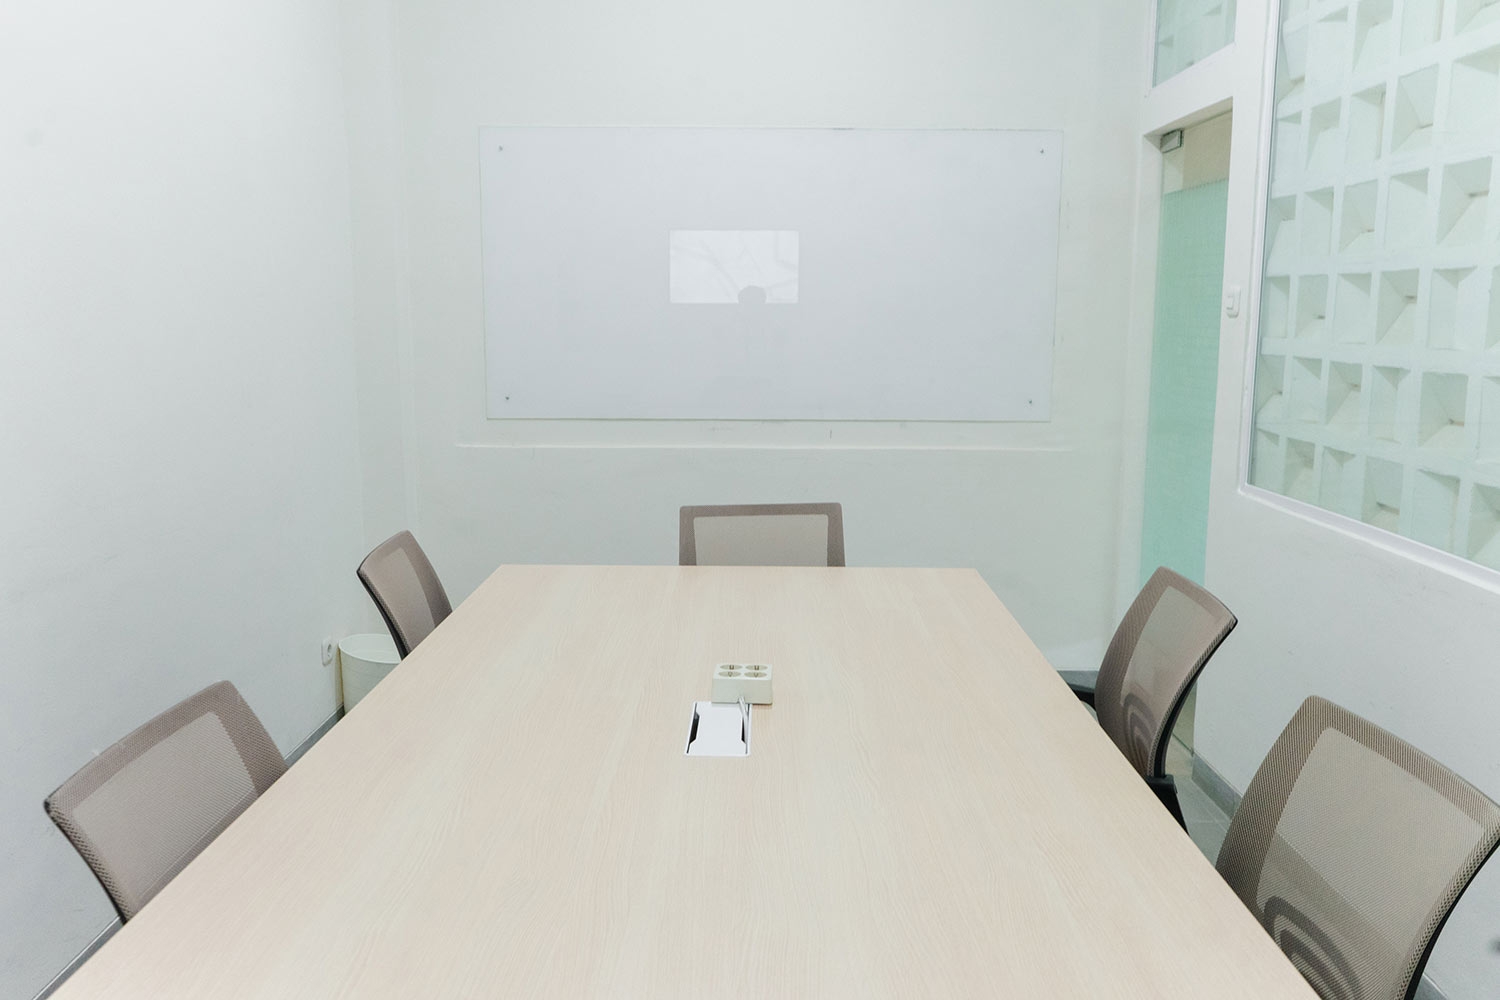 cov - Meeting Room - Social Hub at Twospaces